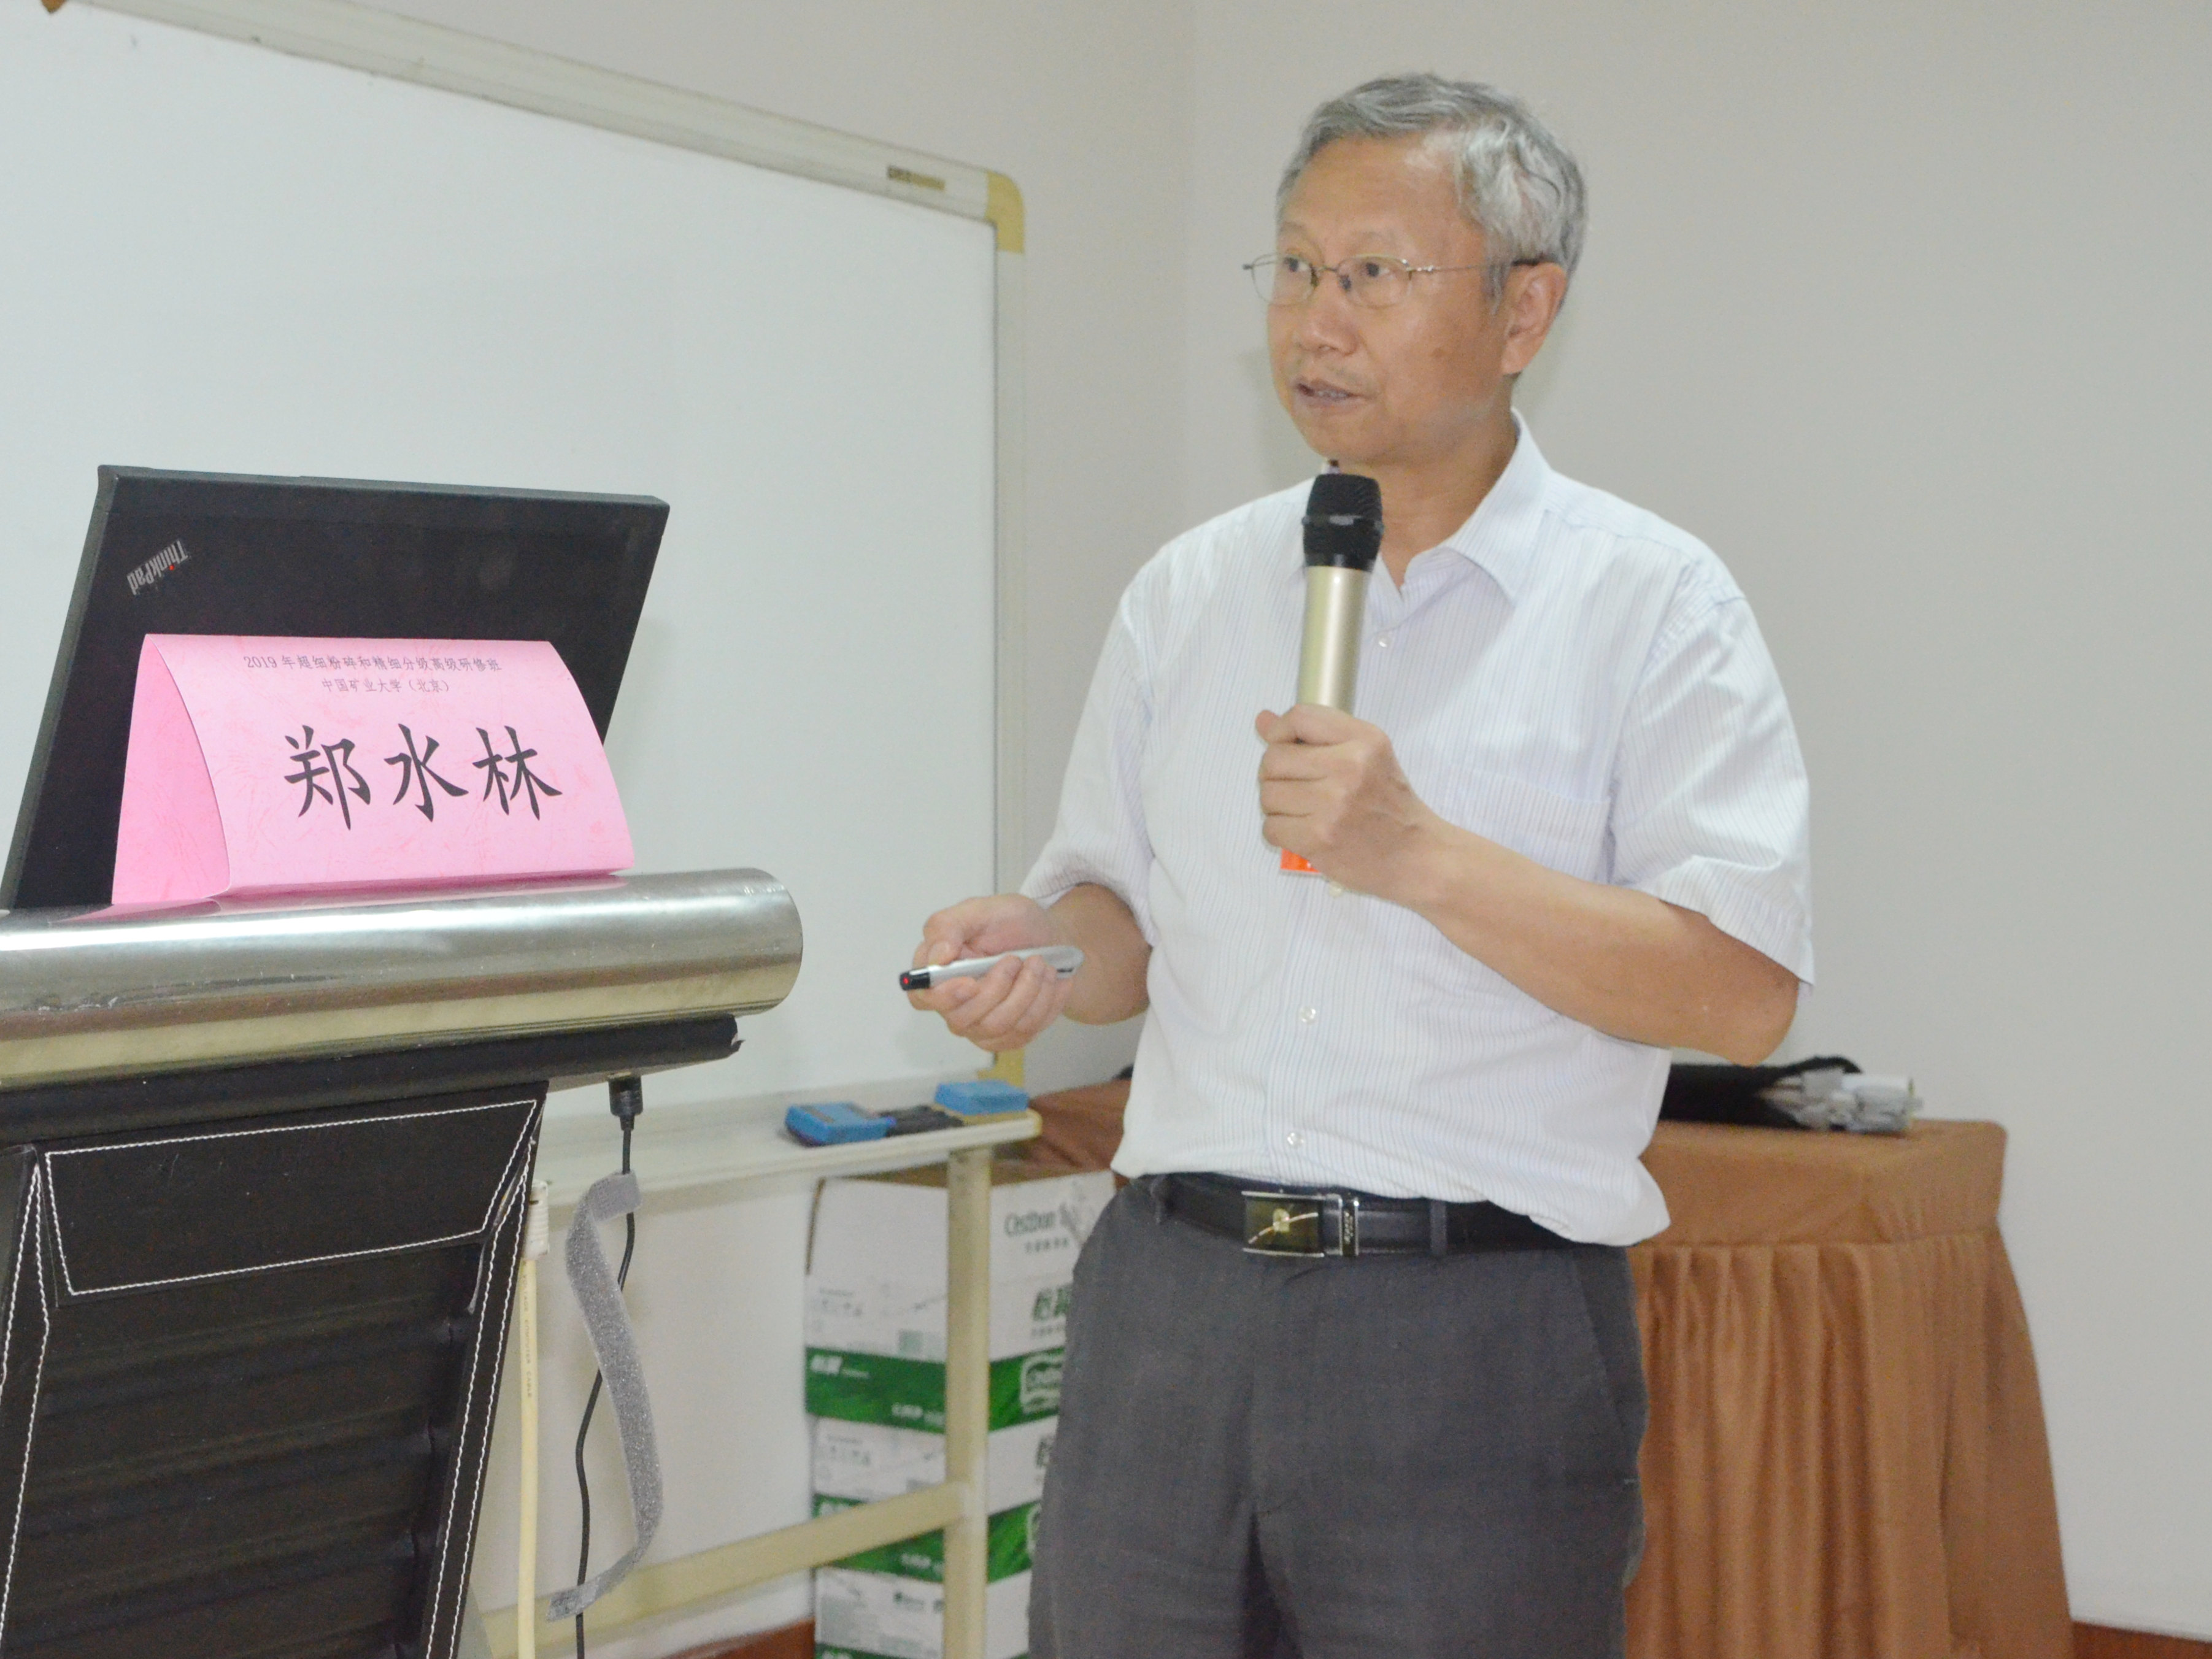 中国矿业大学（北京）郑水林教授主讲《粉体的精细分级技术与设备》